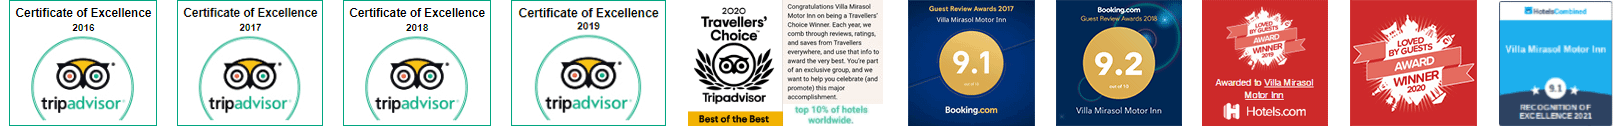 Villa Mirasol Motor Inn Awards - Motel in Bundaberg